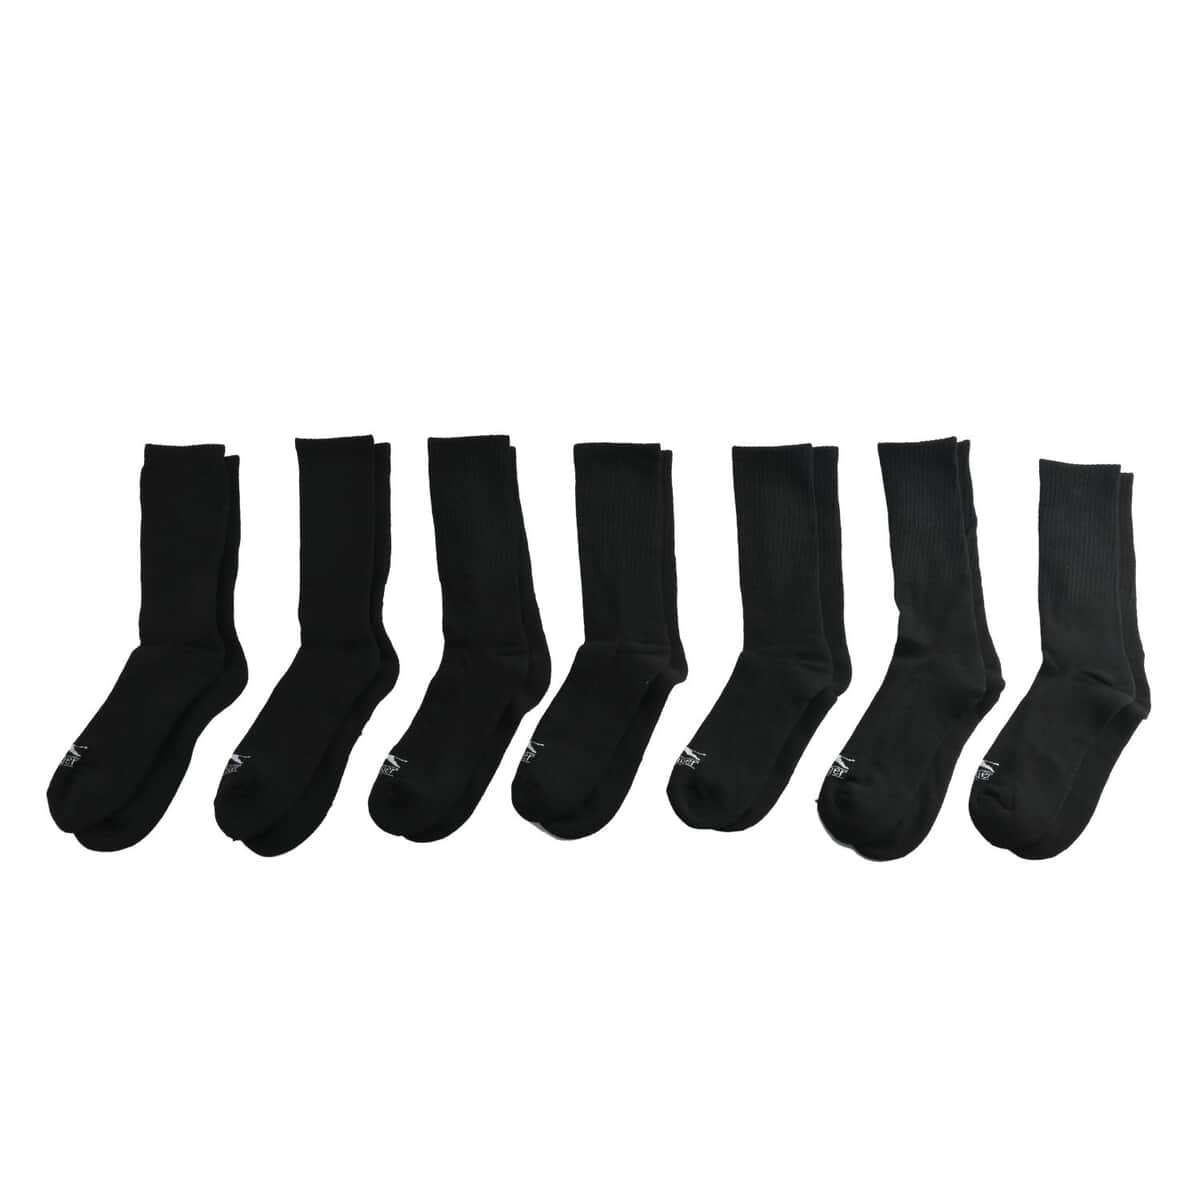 Slazenger Men's 7pck Crew Athletic Socks -Black (Sizes 6-12.5) image number 0